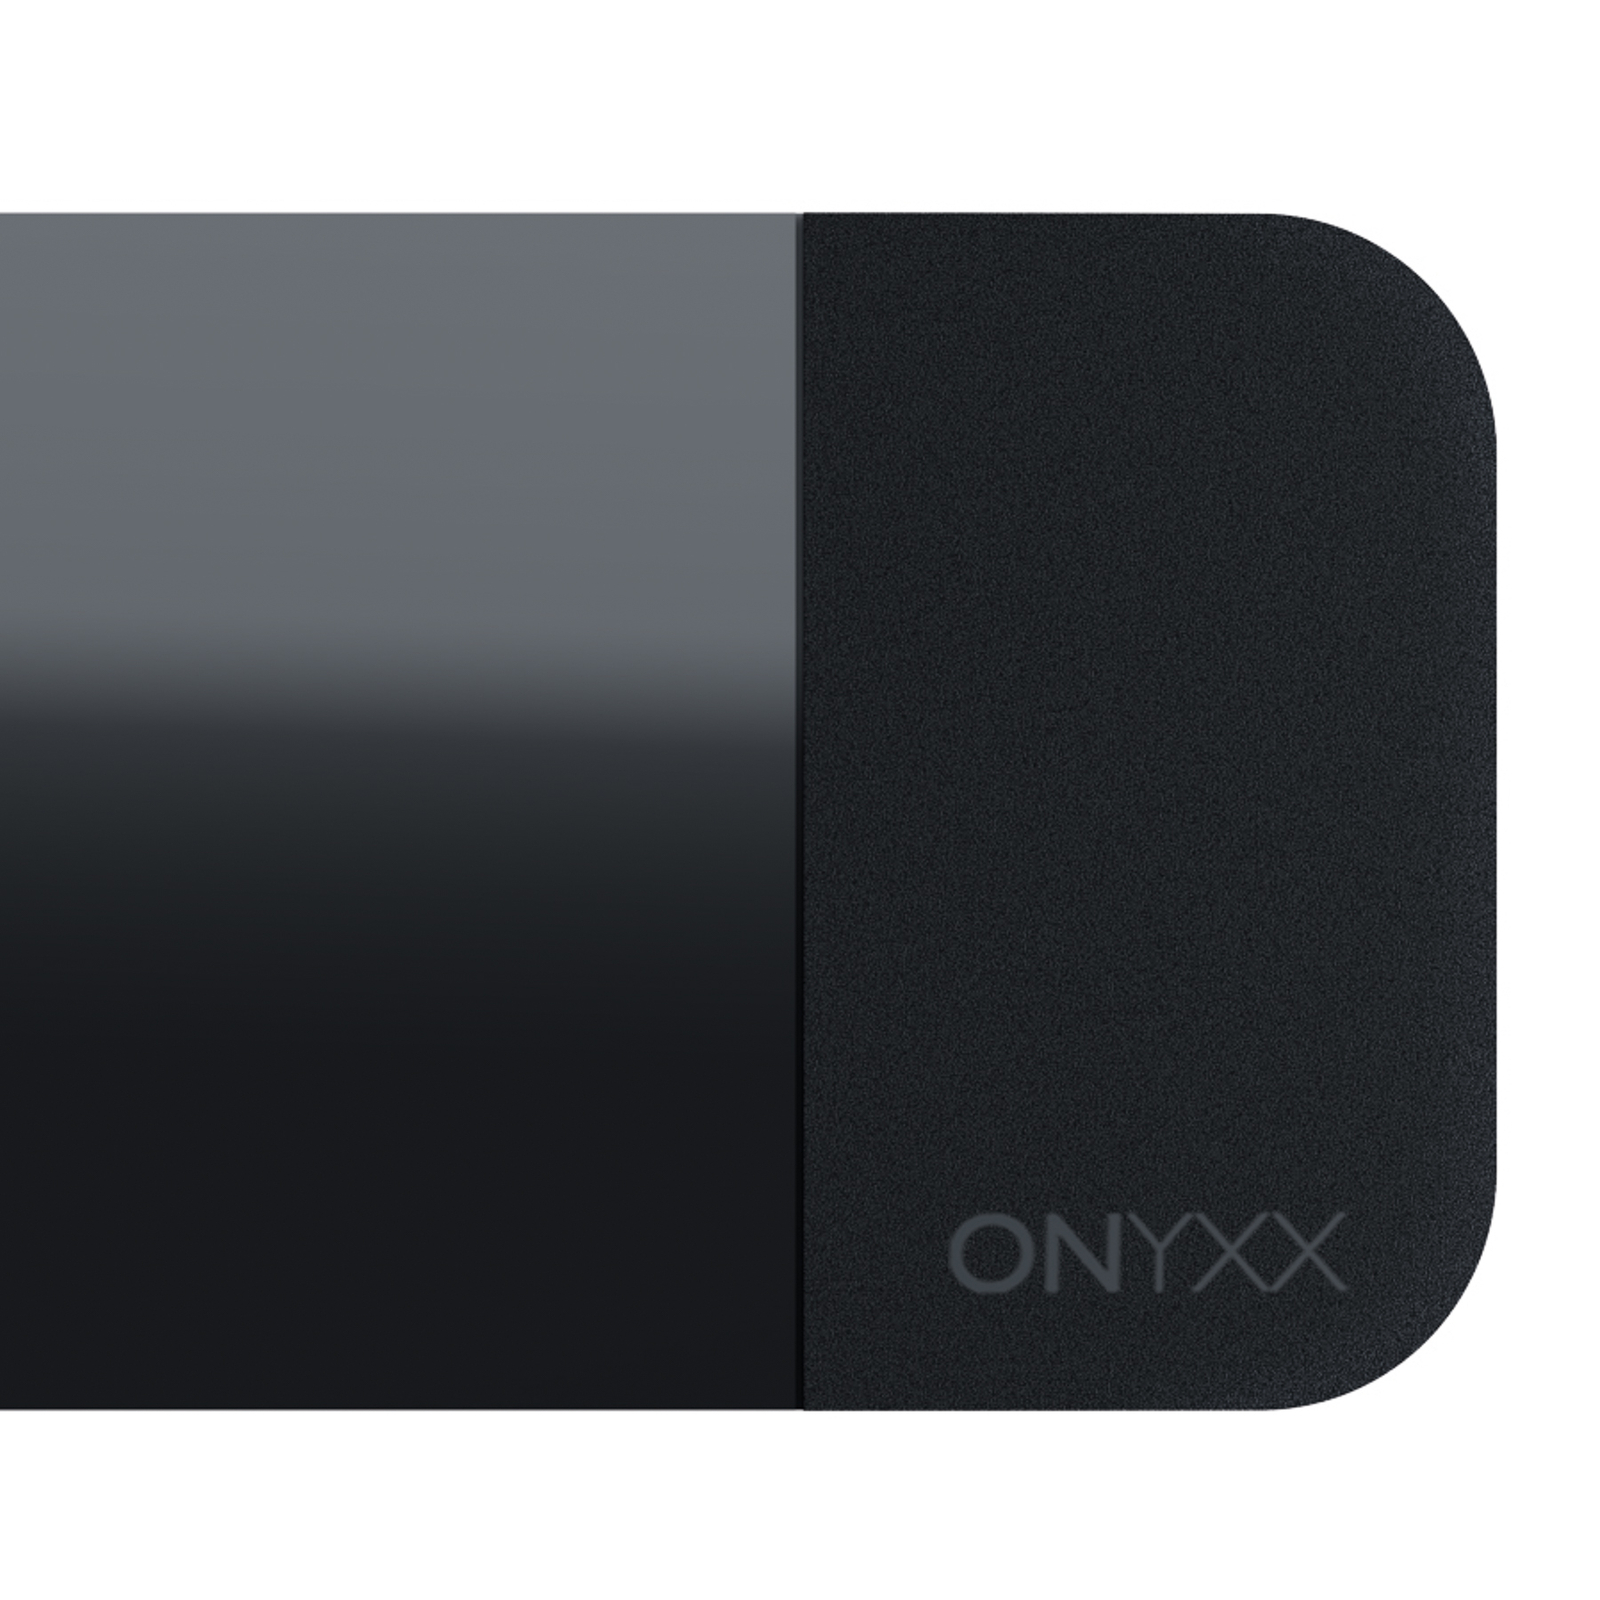 GRIMMEISEN Onyxx Linea Pro hanglamp zwart/zwart